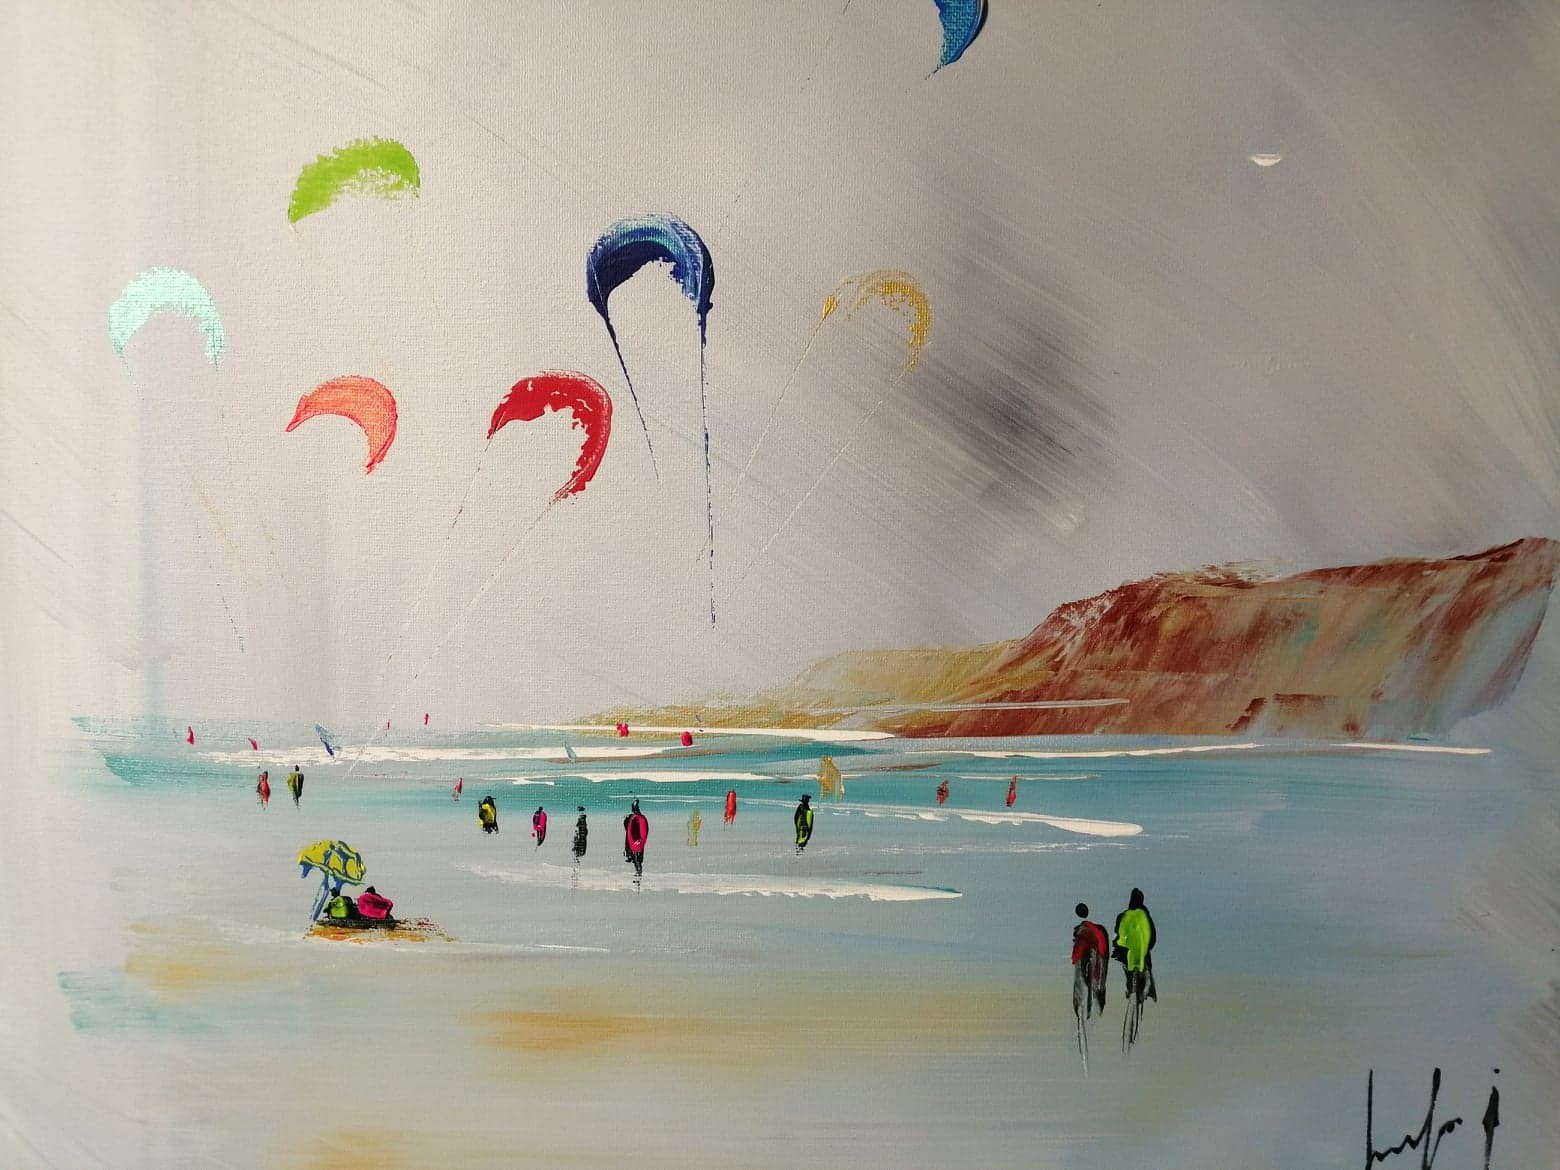  kites surf à Wimereux 